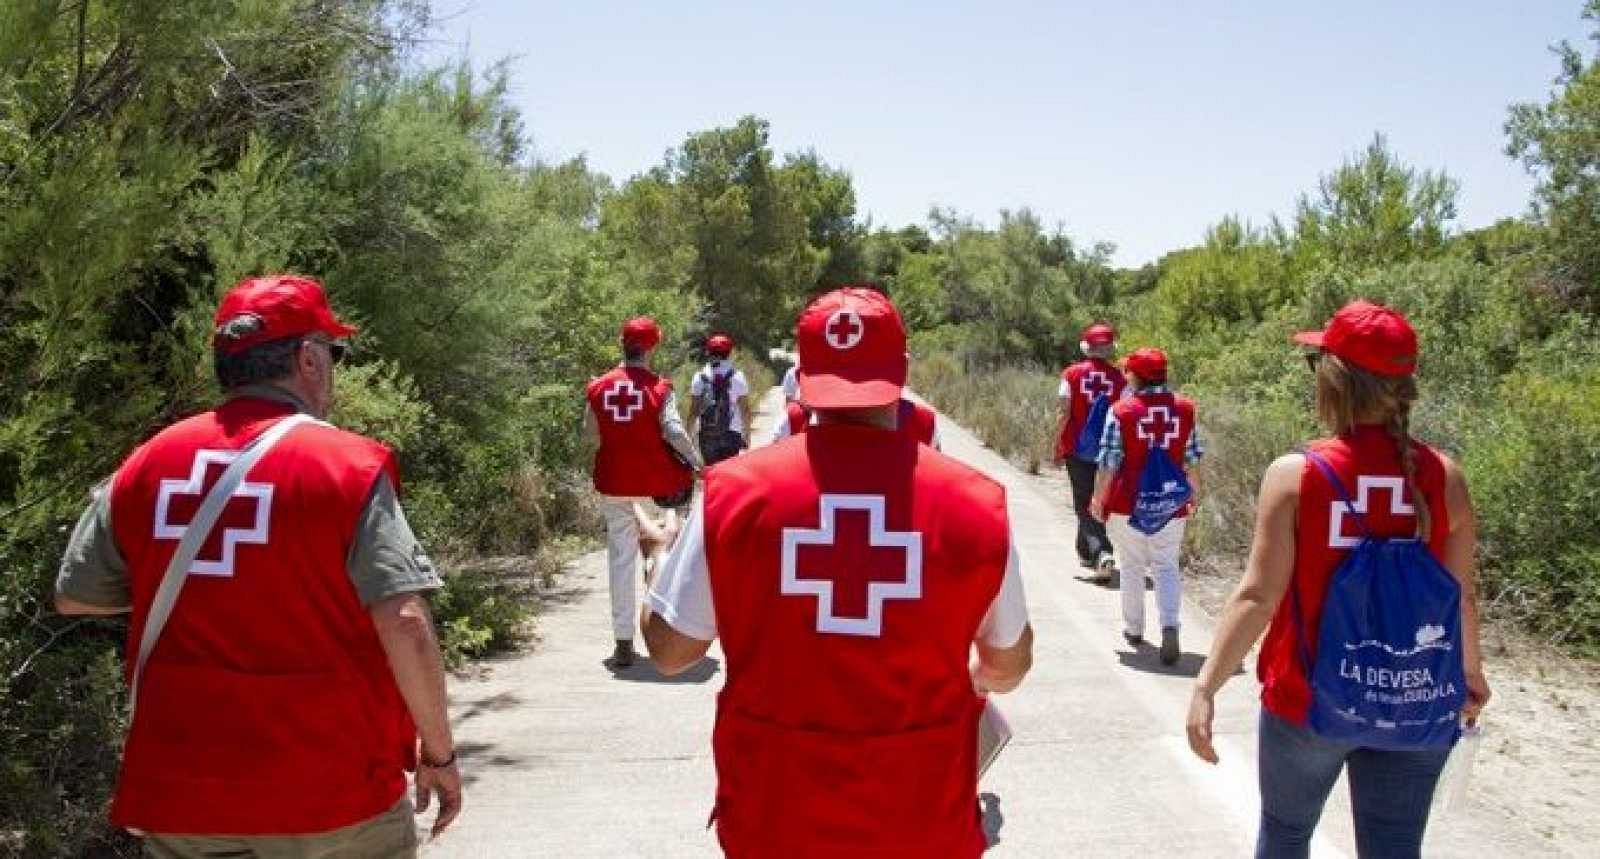 Ser voluntario de la Cruz Roja. Ayudar a los demás.